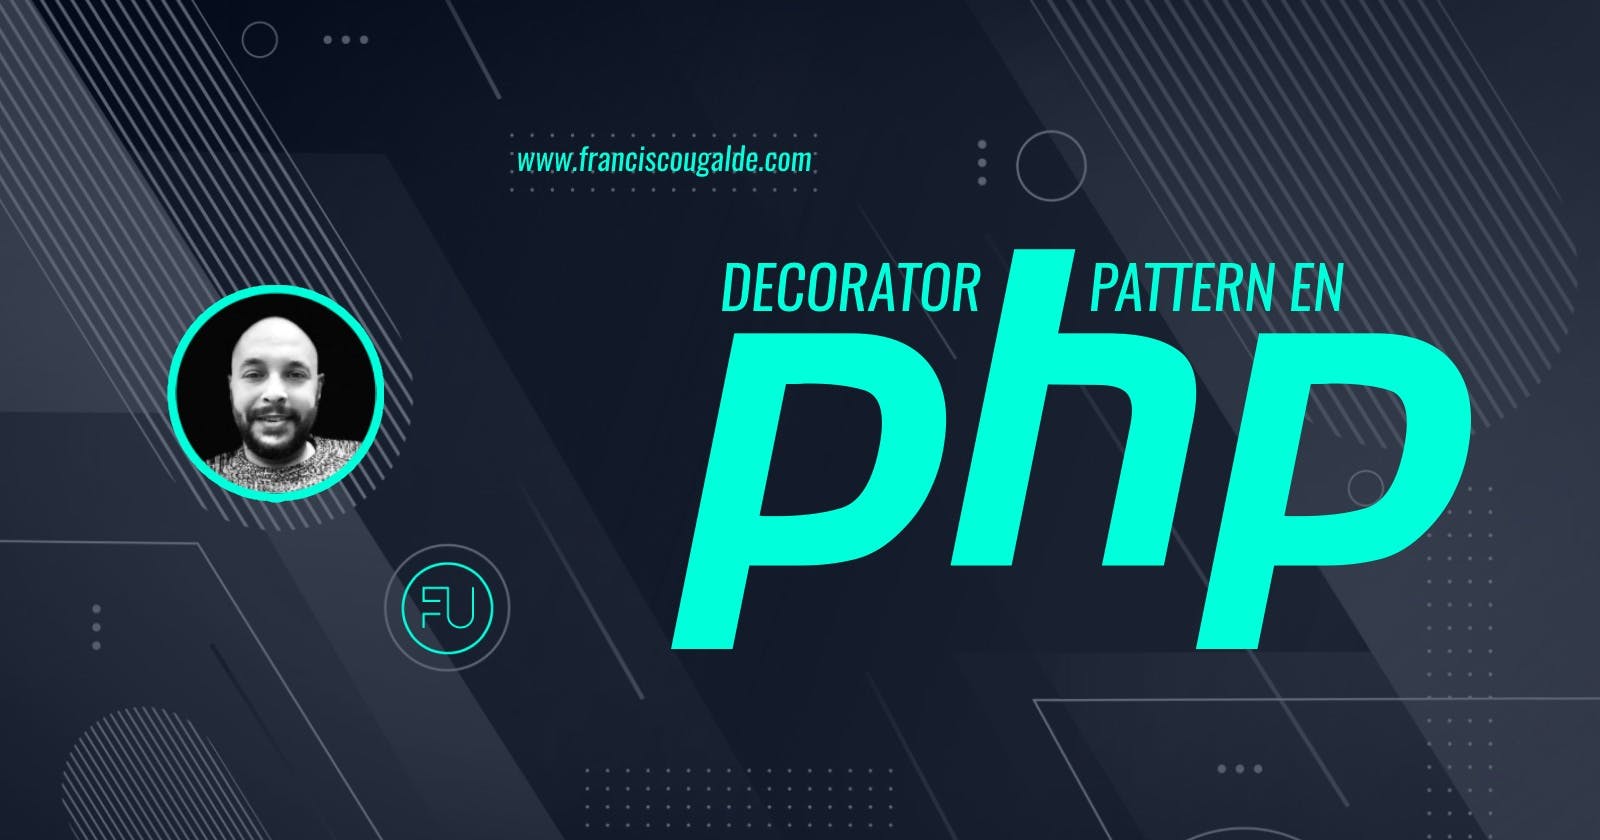 Patrón de diseño Decorator en PHP